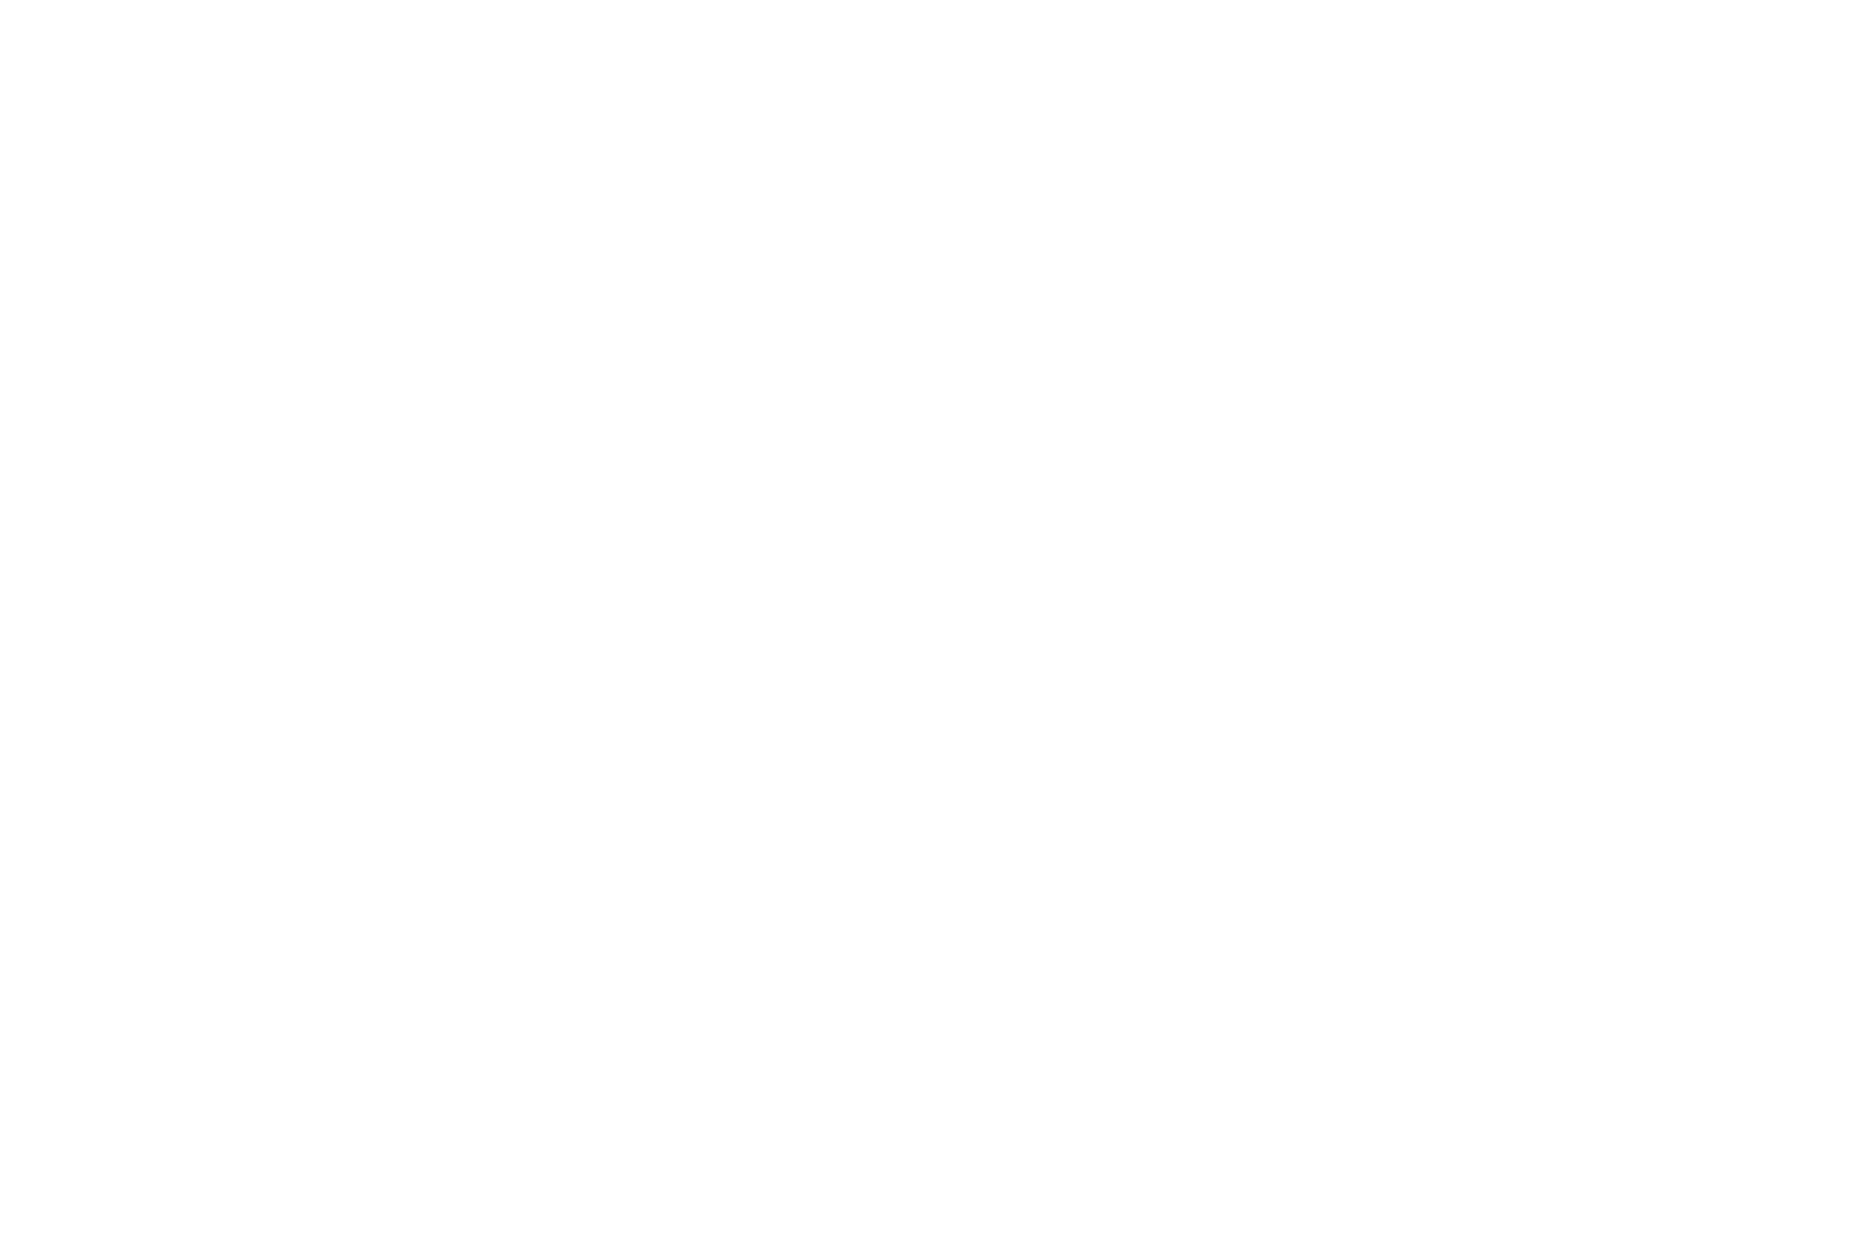 Think/Feel